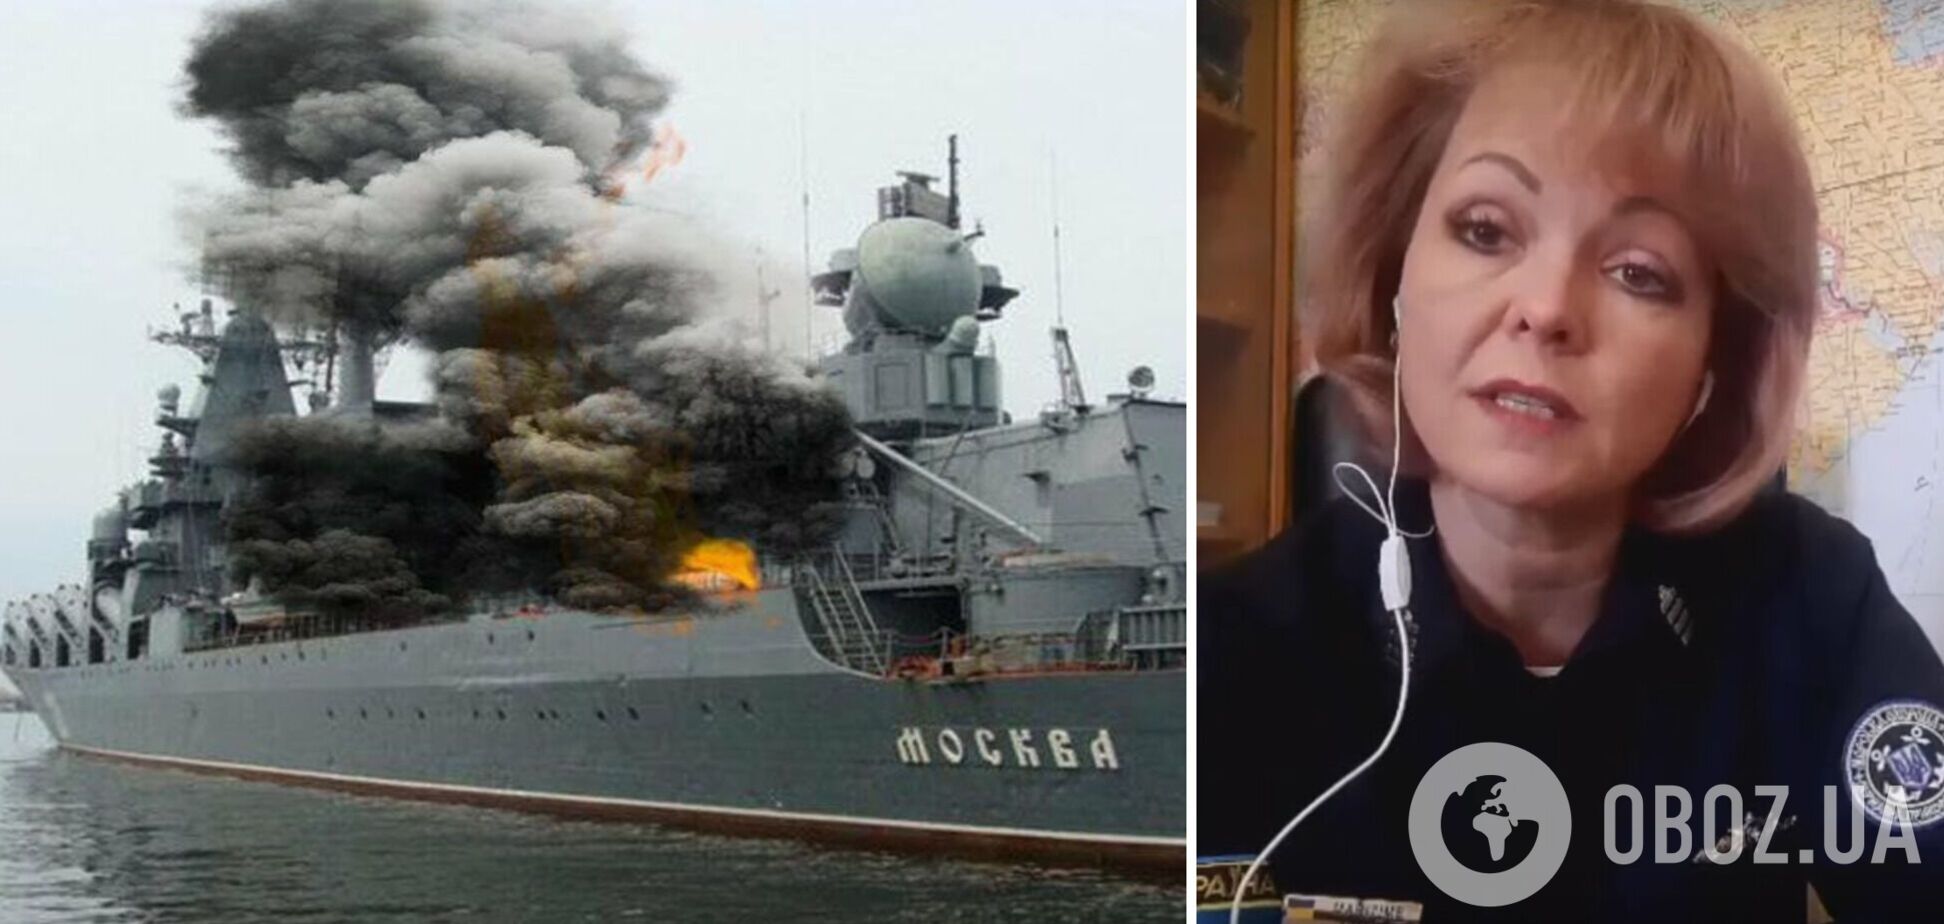 Экипаж затонувшего крейсера 'Москва' не эвакуировали, – Морская охрана Госпогранслужбы Украины